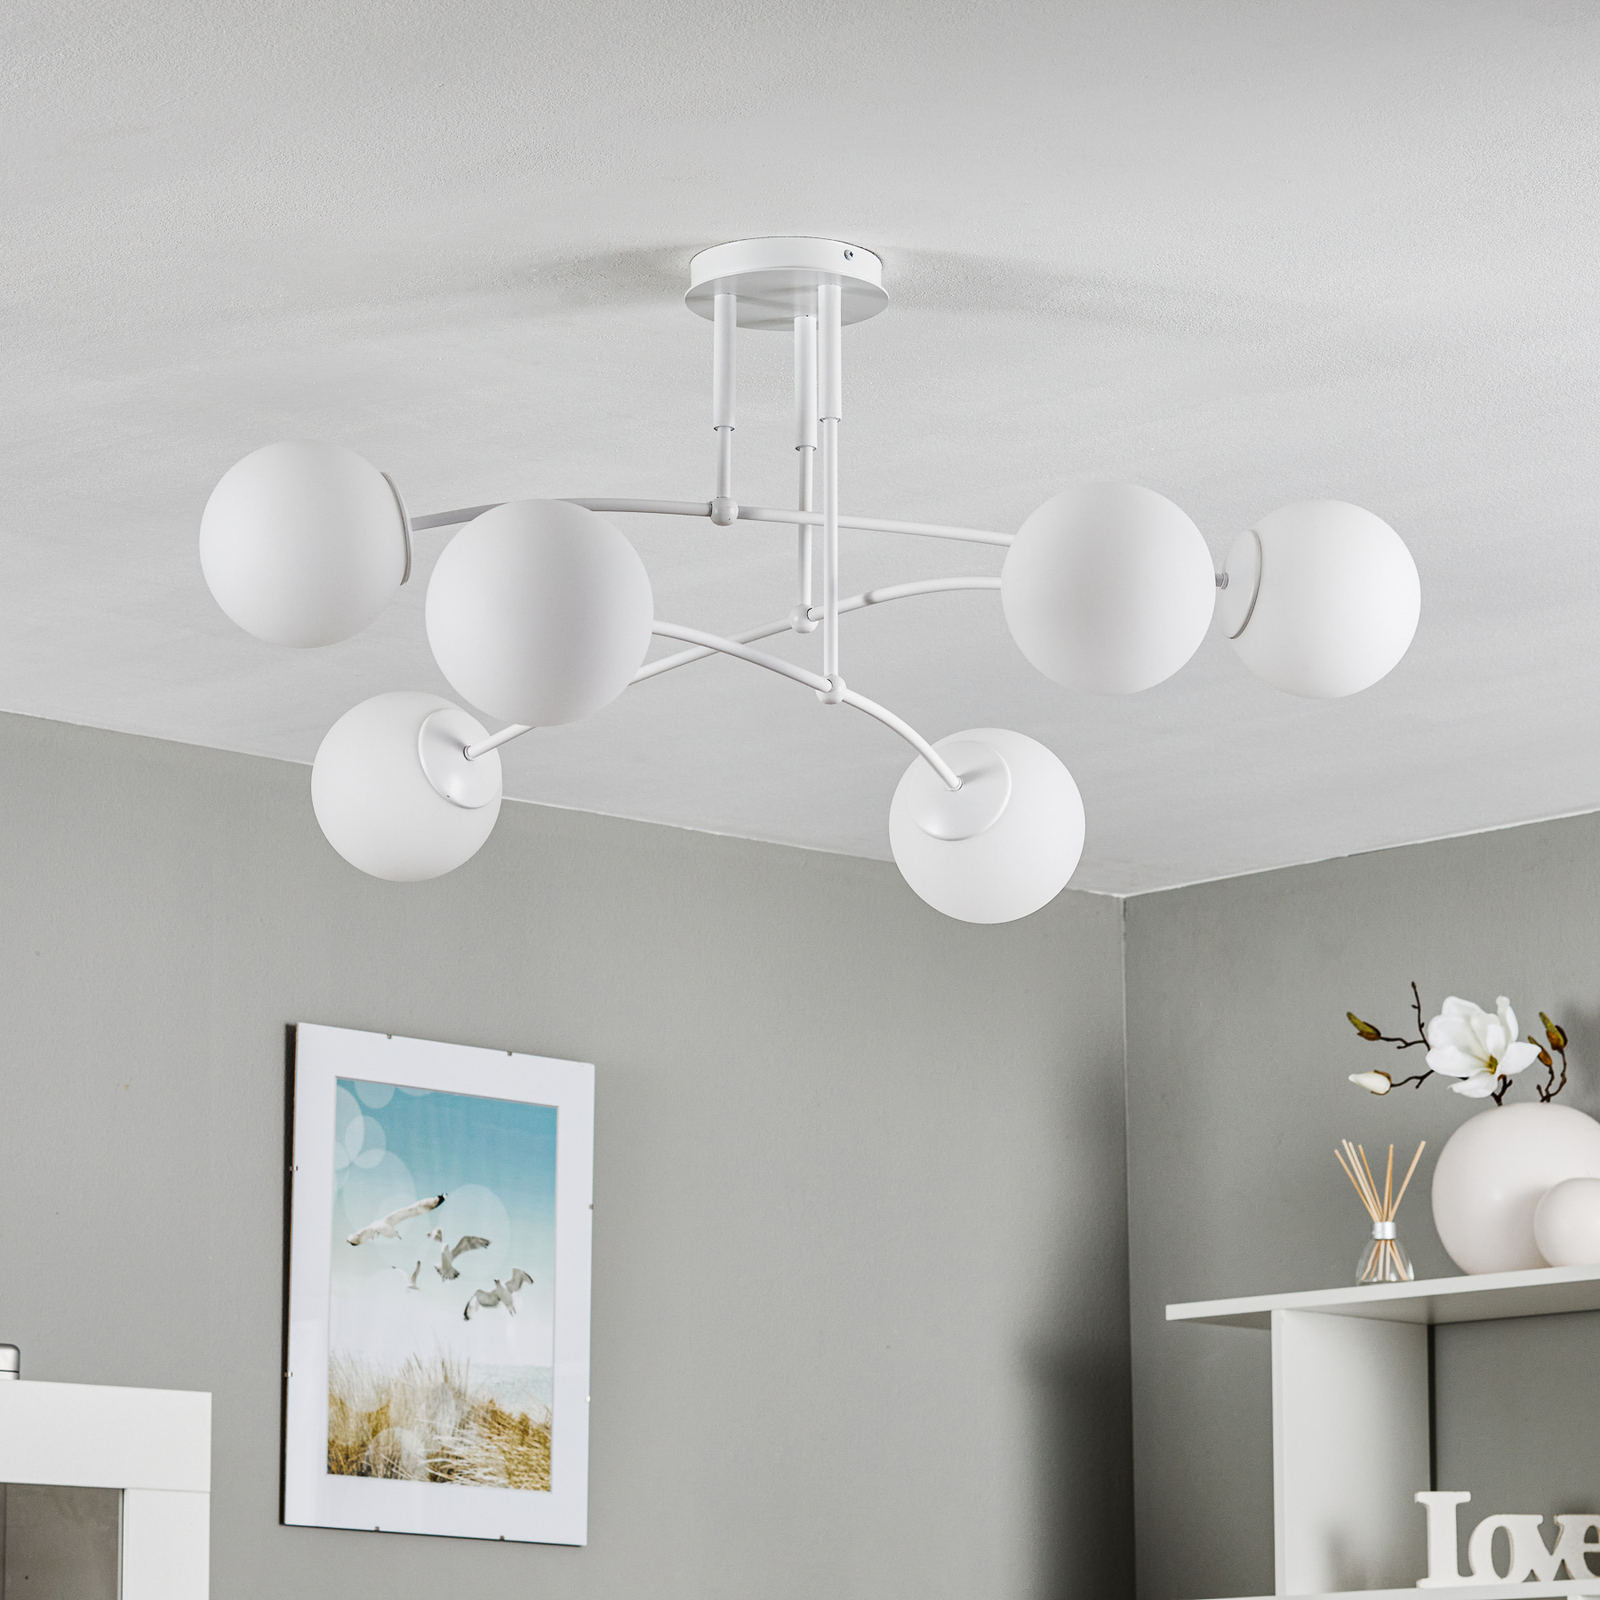 Pregos 6 ceiling light, 6-bulb in white